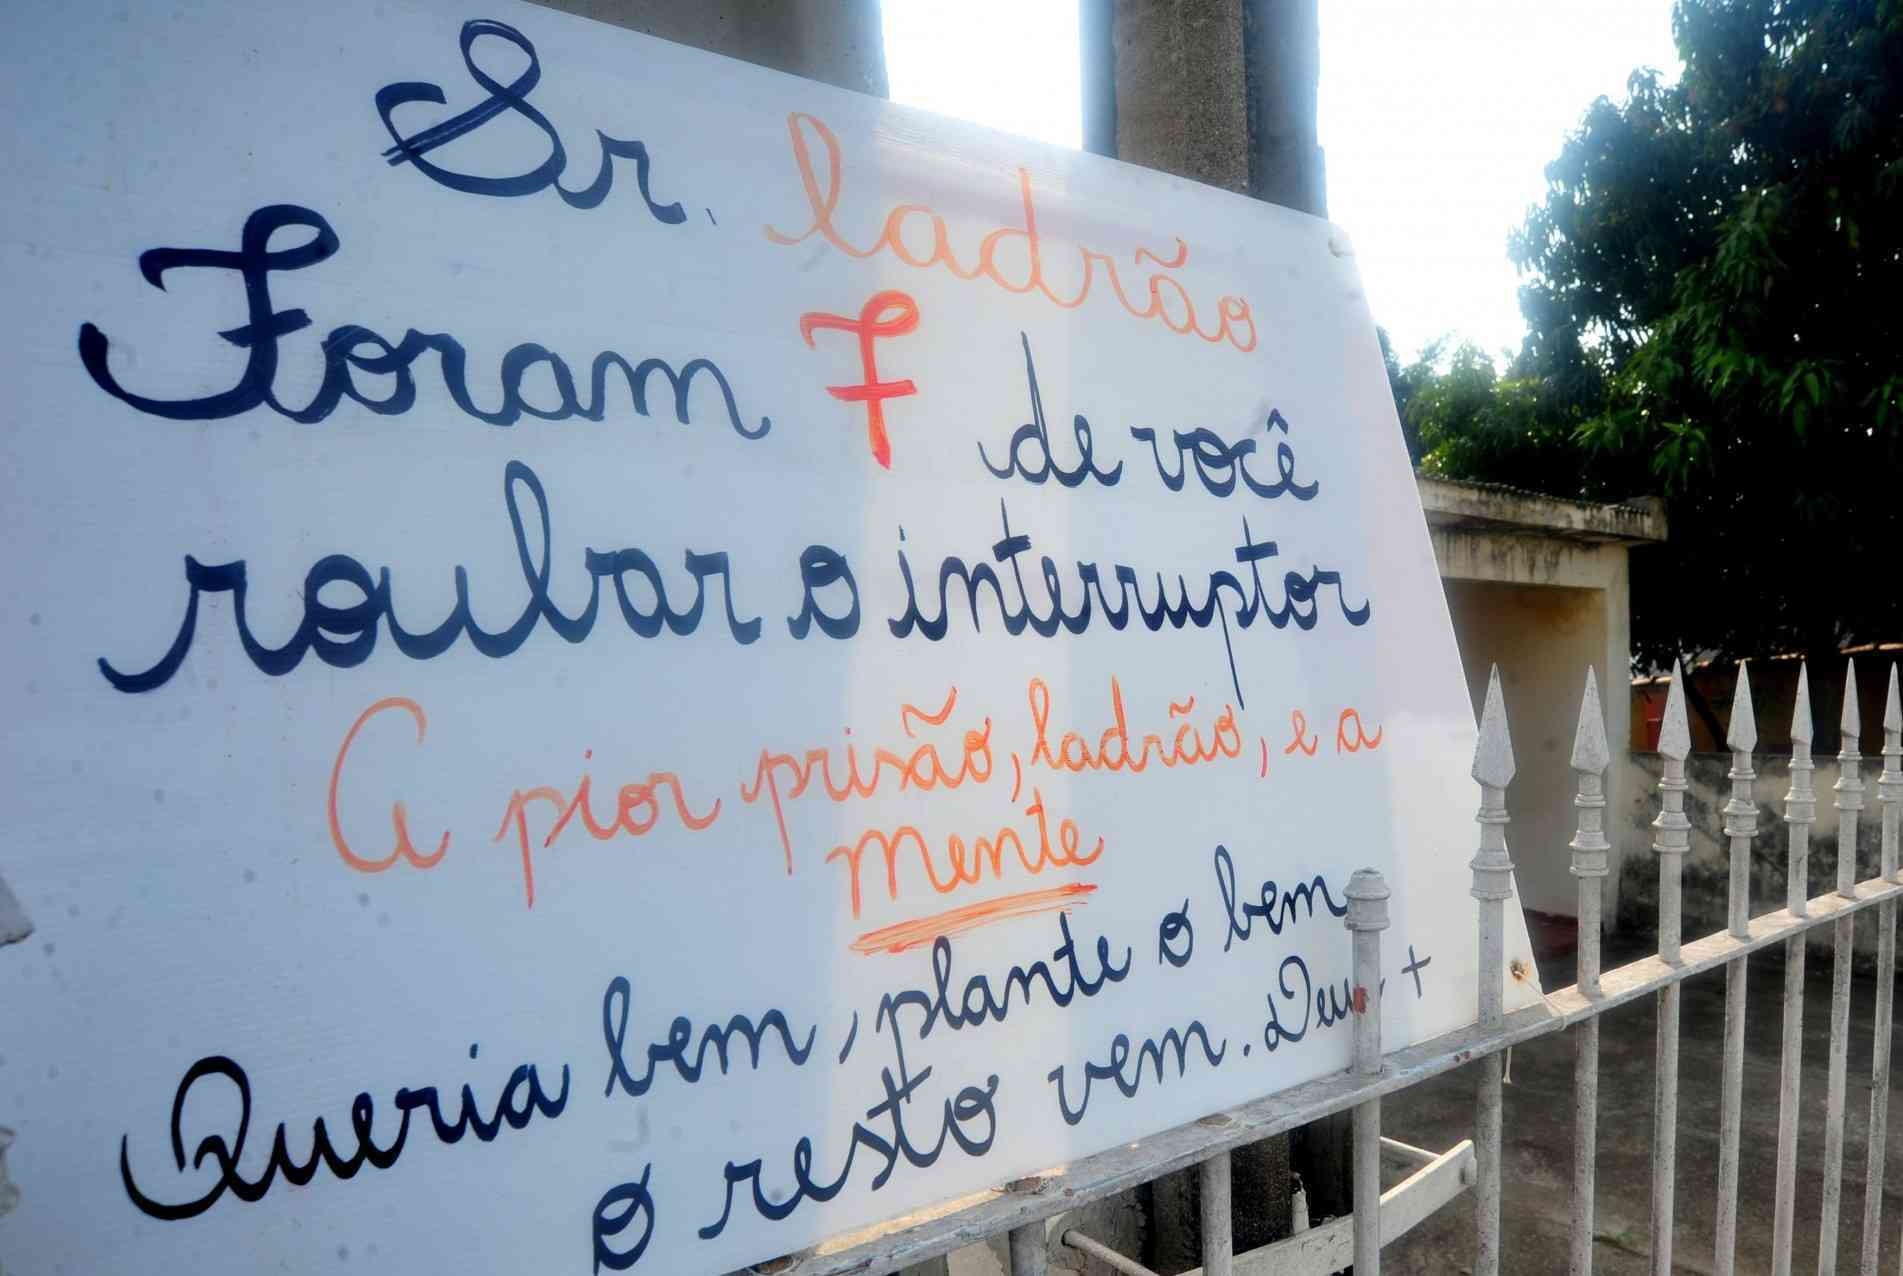 Cartaz está fixado no portão de residência da rua Dr. Cantídio de Moura Campos.